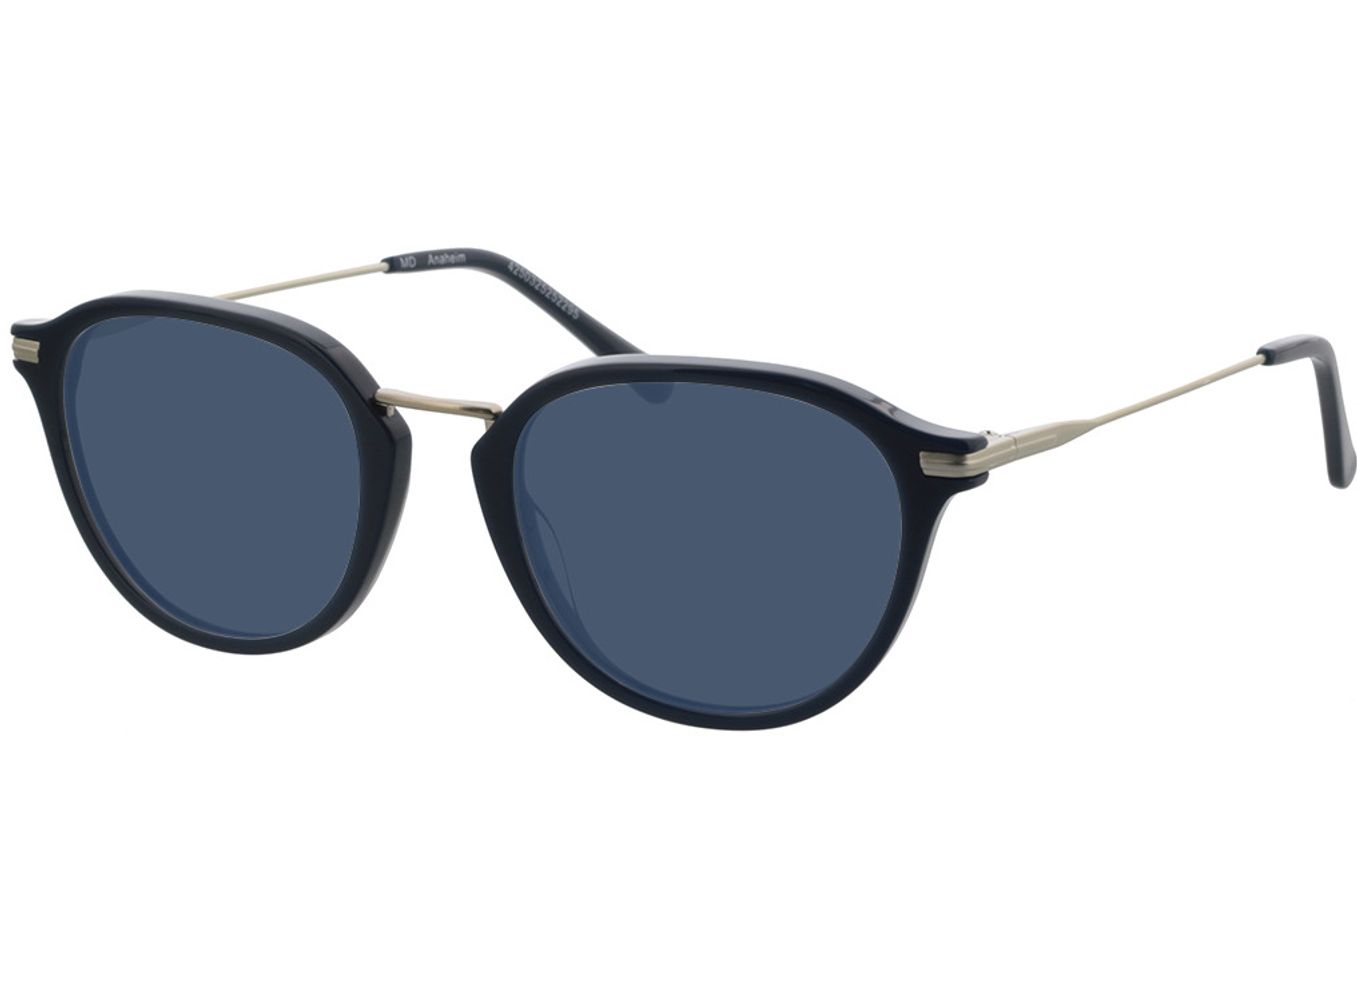 Anaheim - blau/silber Sonnenbrille ohne Sehstärke, Vollrand, Rund von Brille24 Collection